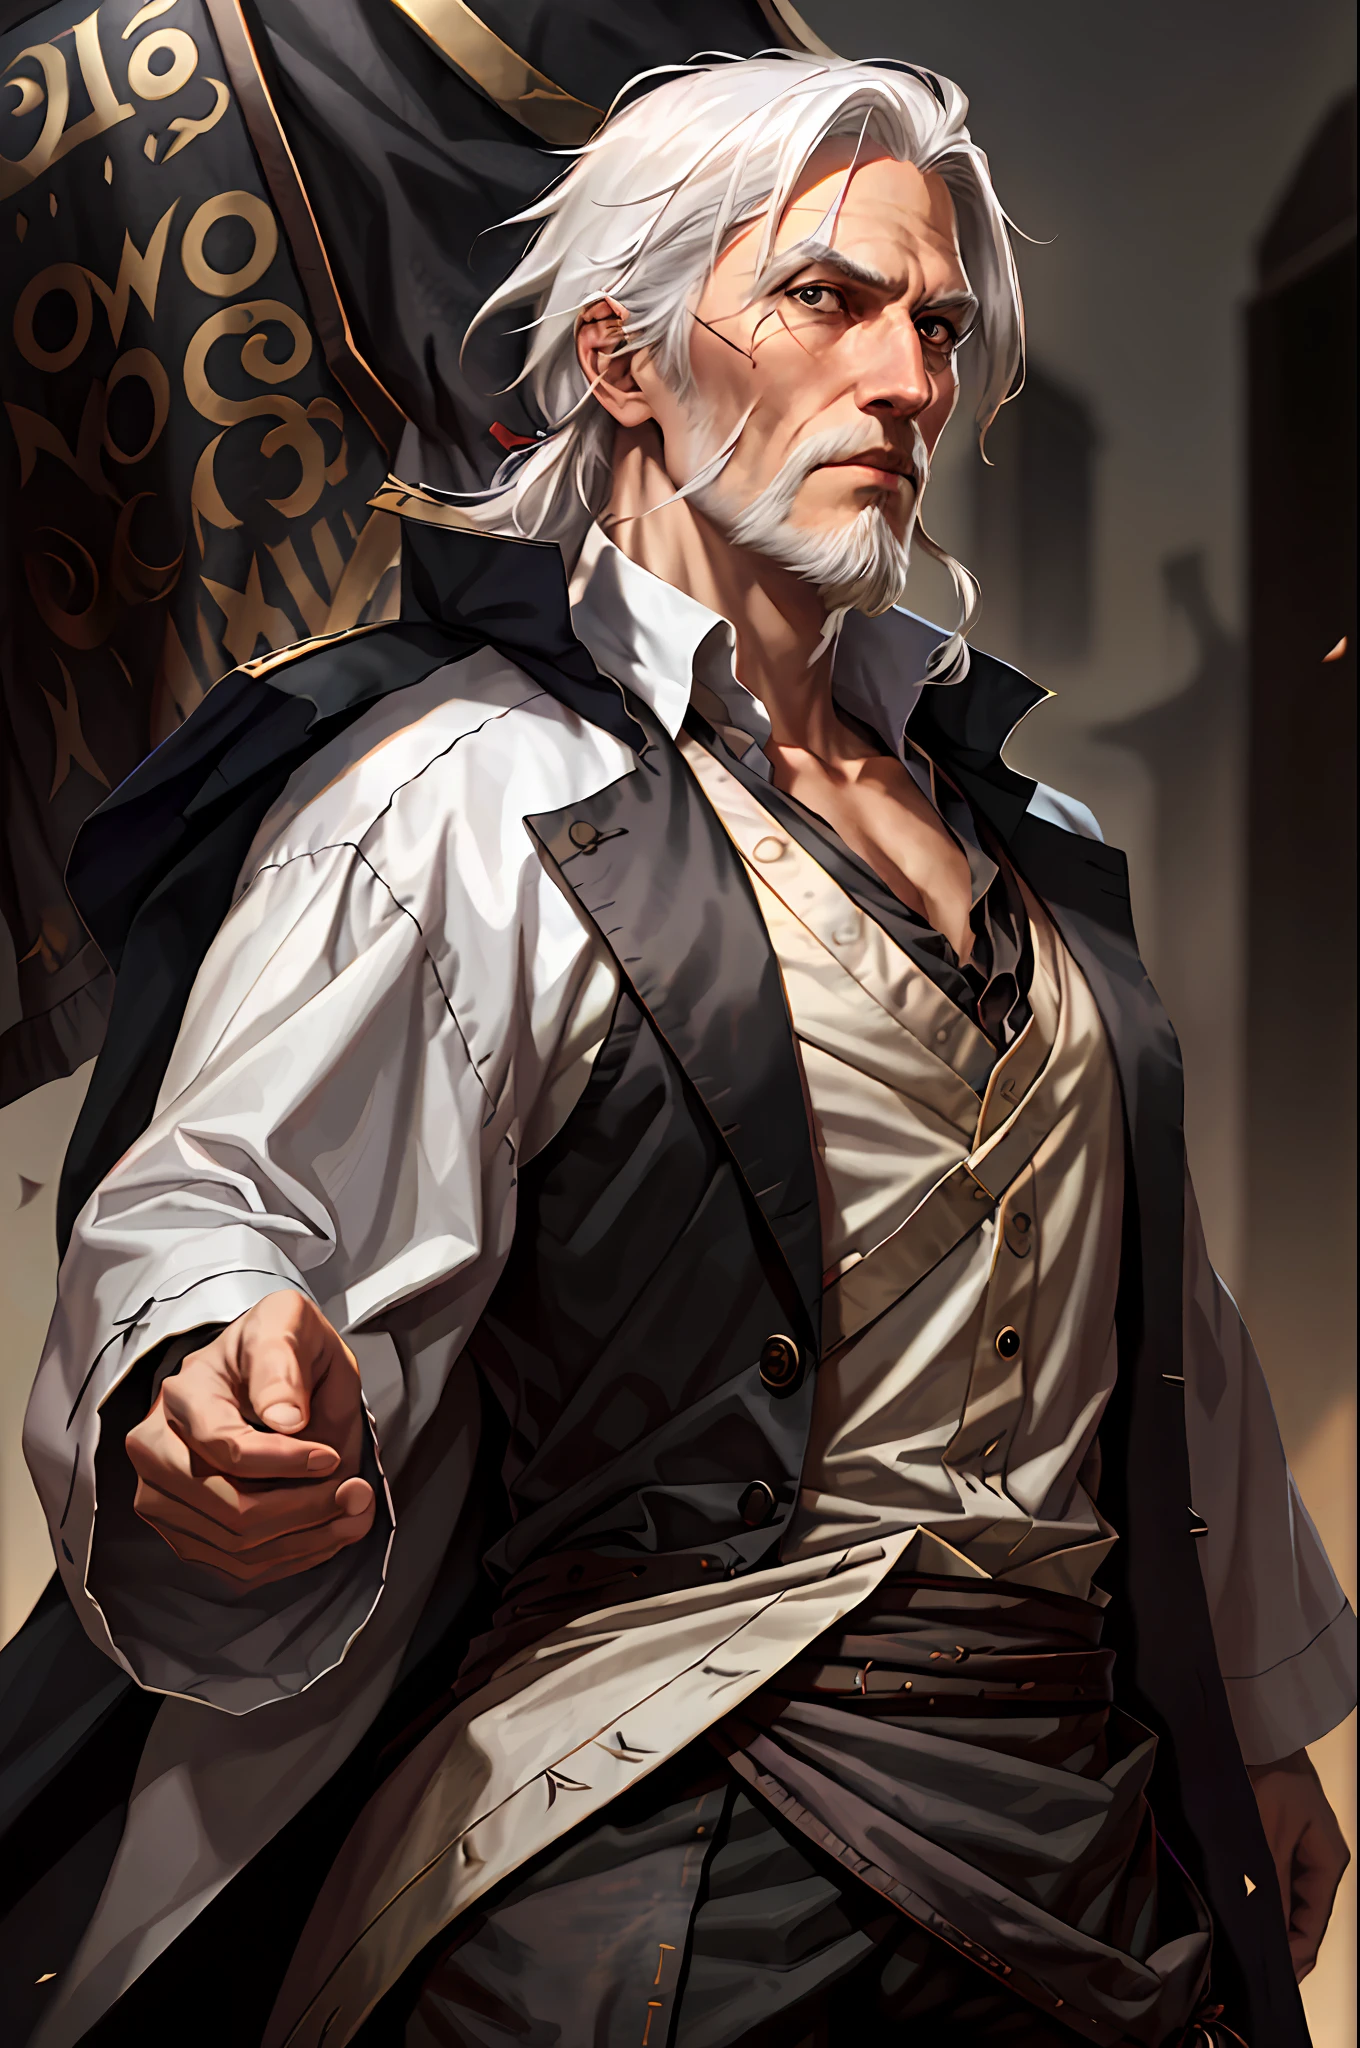 Homem, pirata, inglês, cabelo branco liso, barba branca, cicatriz no olho, forte e alto, relativamente antigo, Roupas pretas.